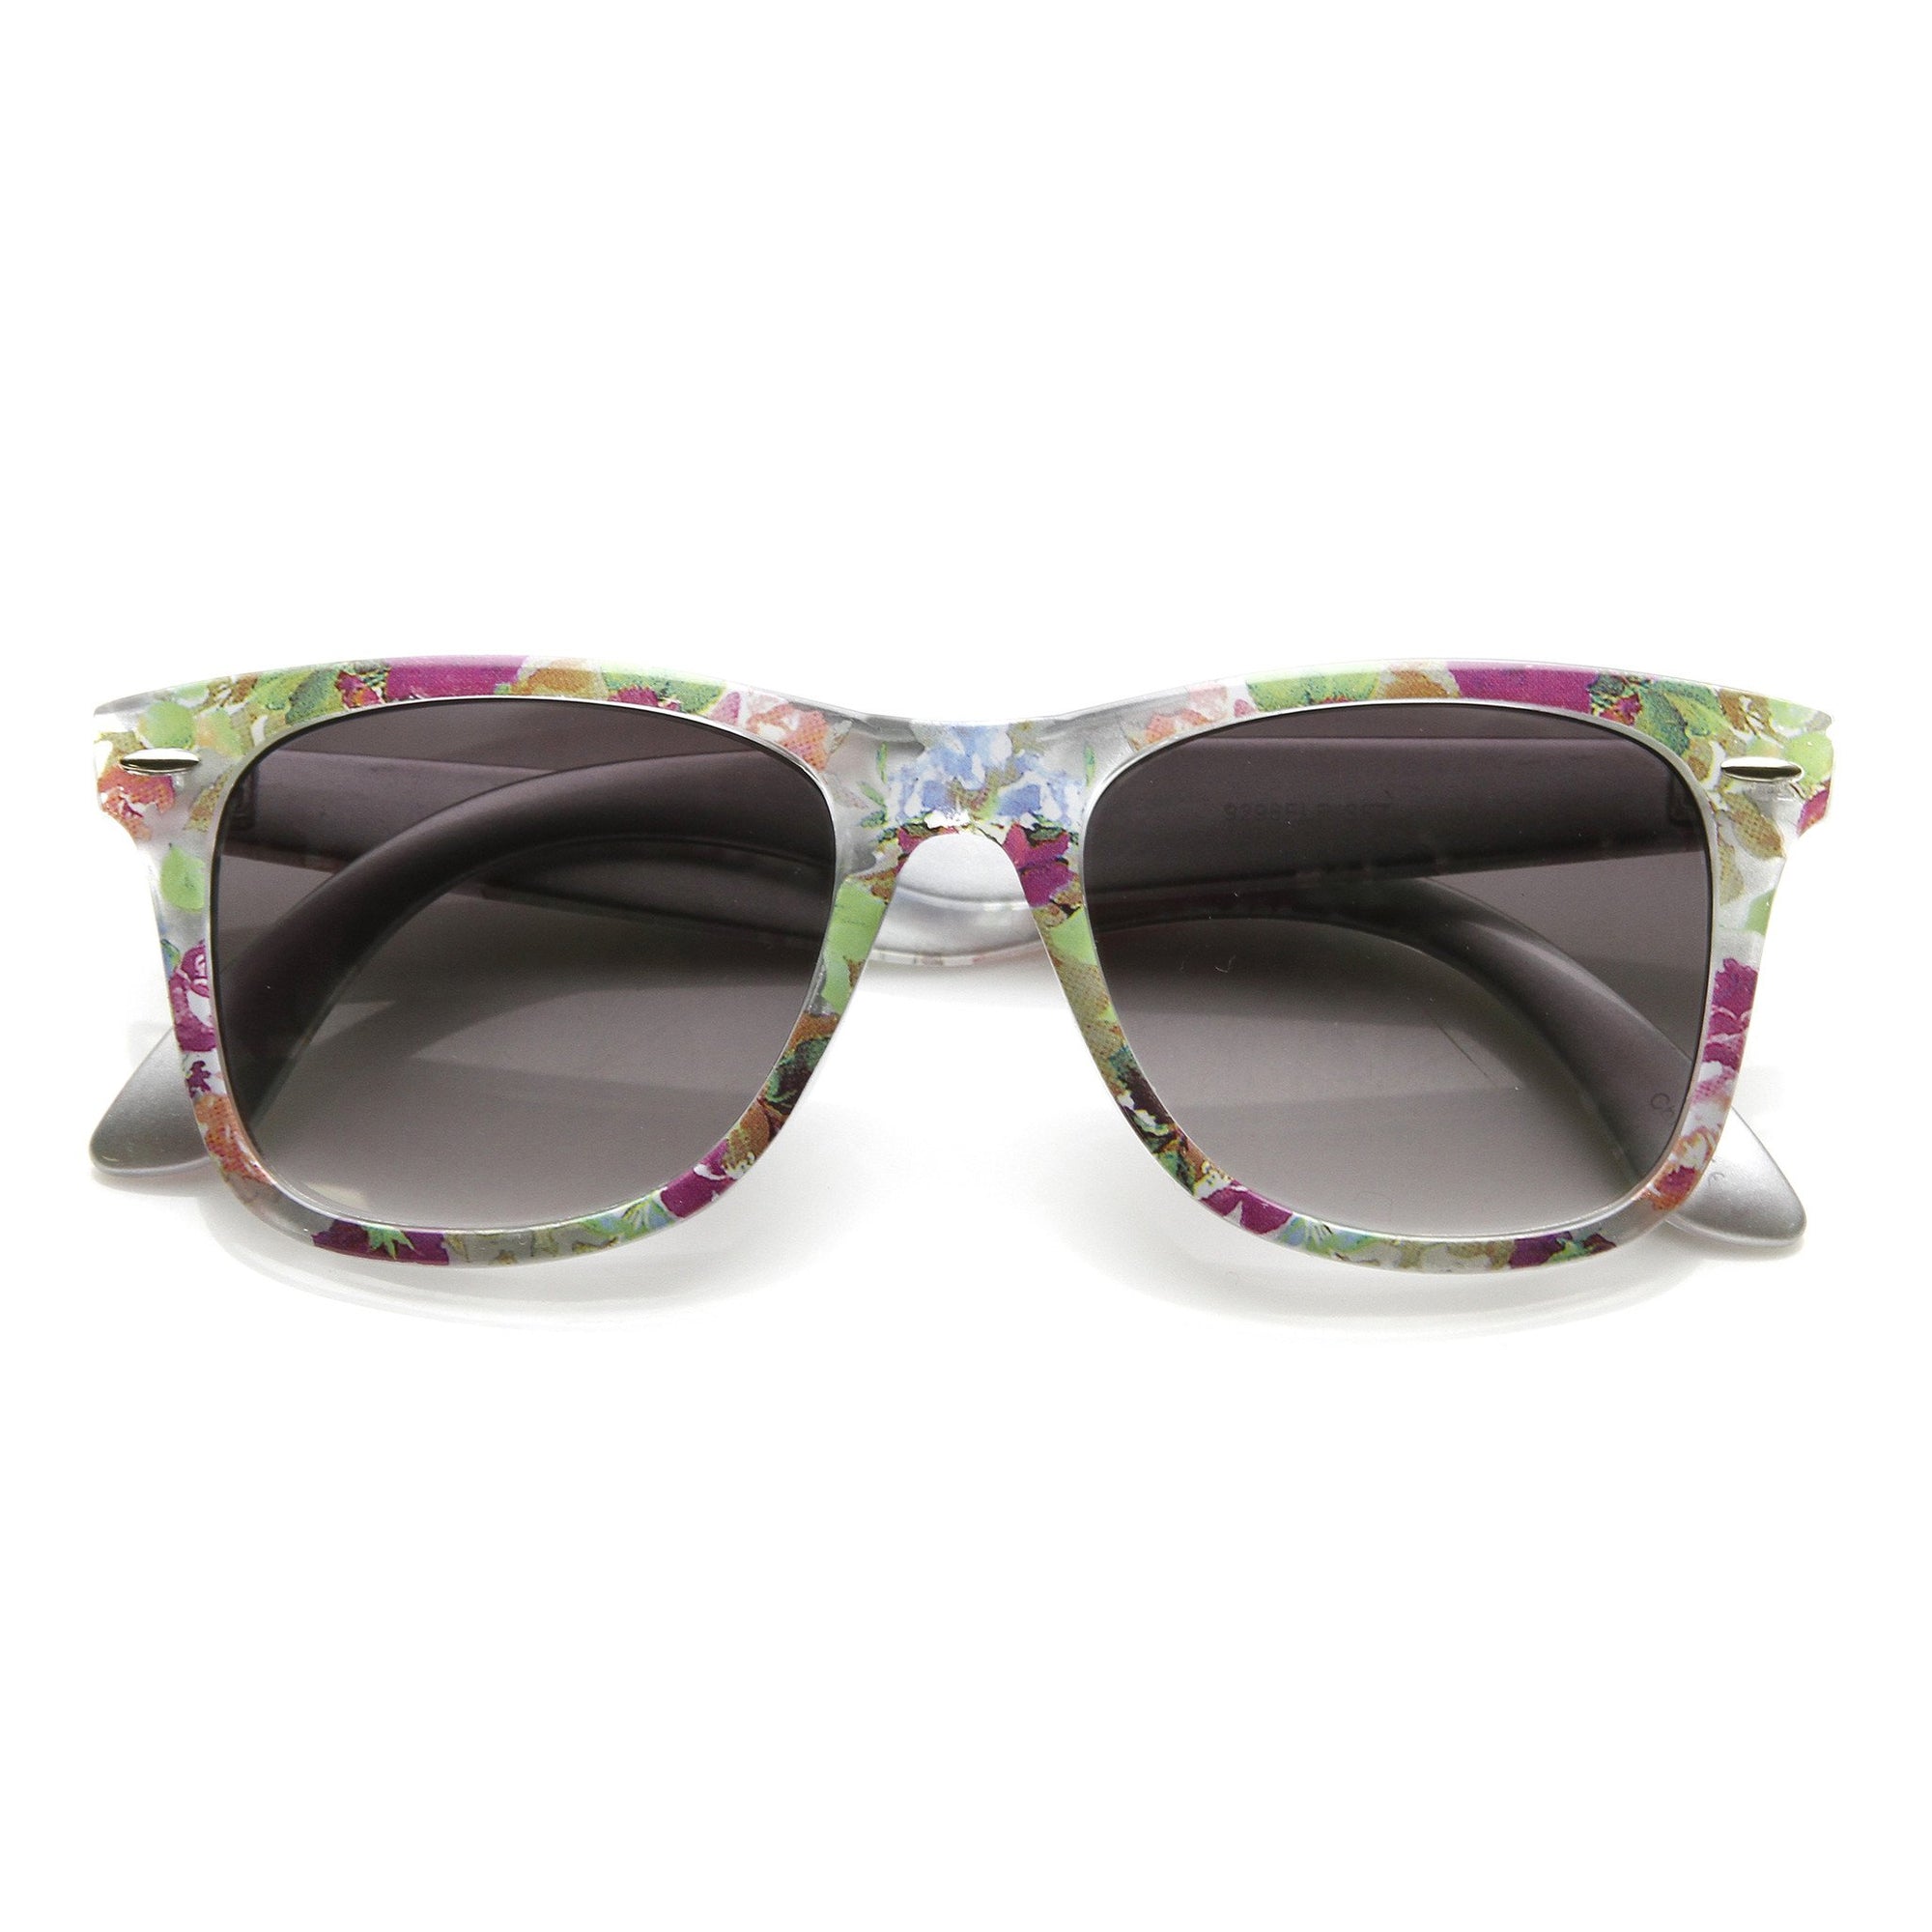 Women's Hippie Indie Floral Flower Wayfarer Sunglasses - zeroUV